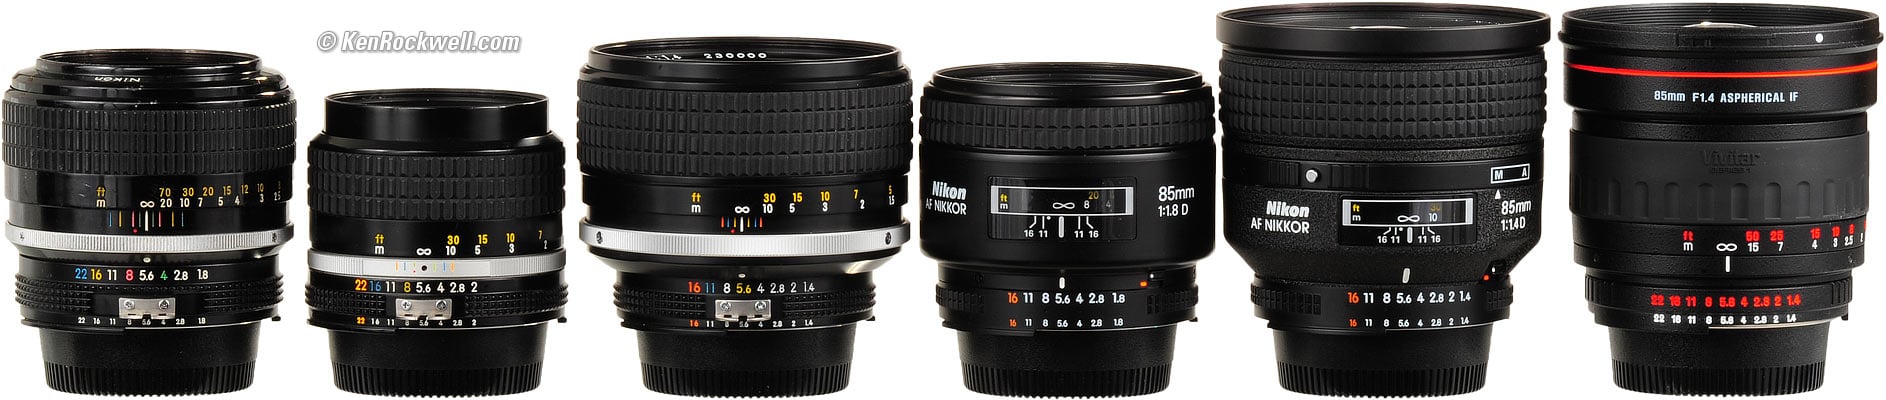 Nikon 85mm f/2 Review